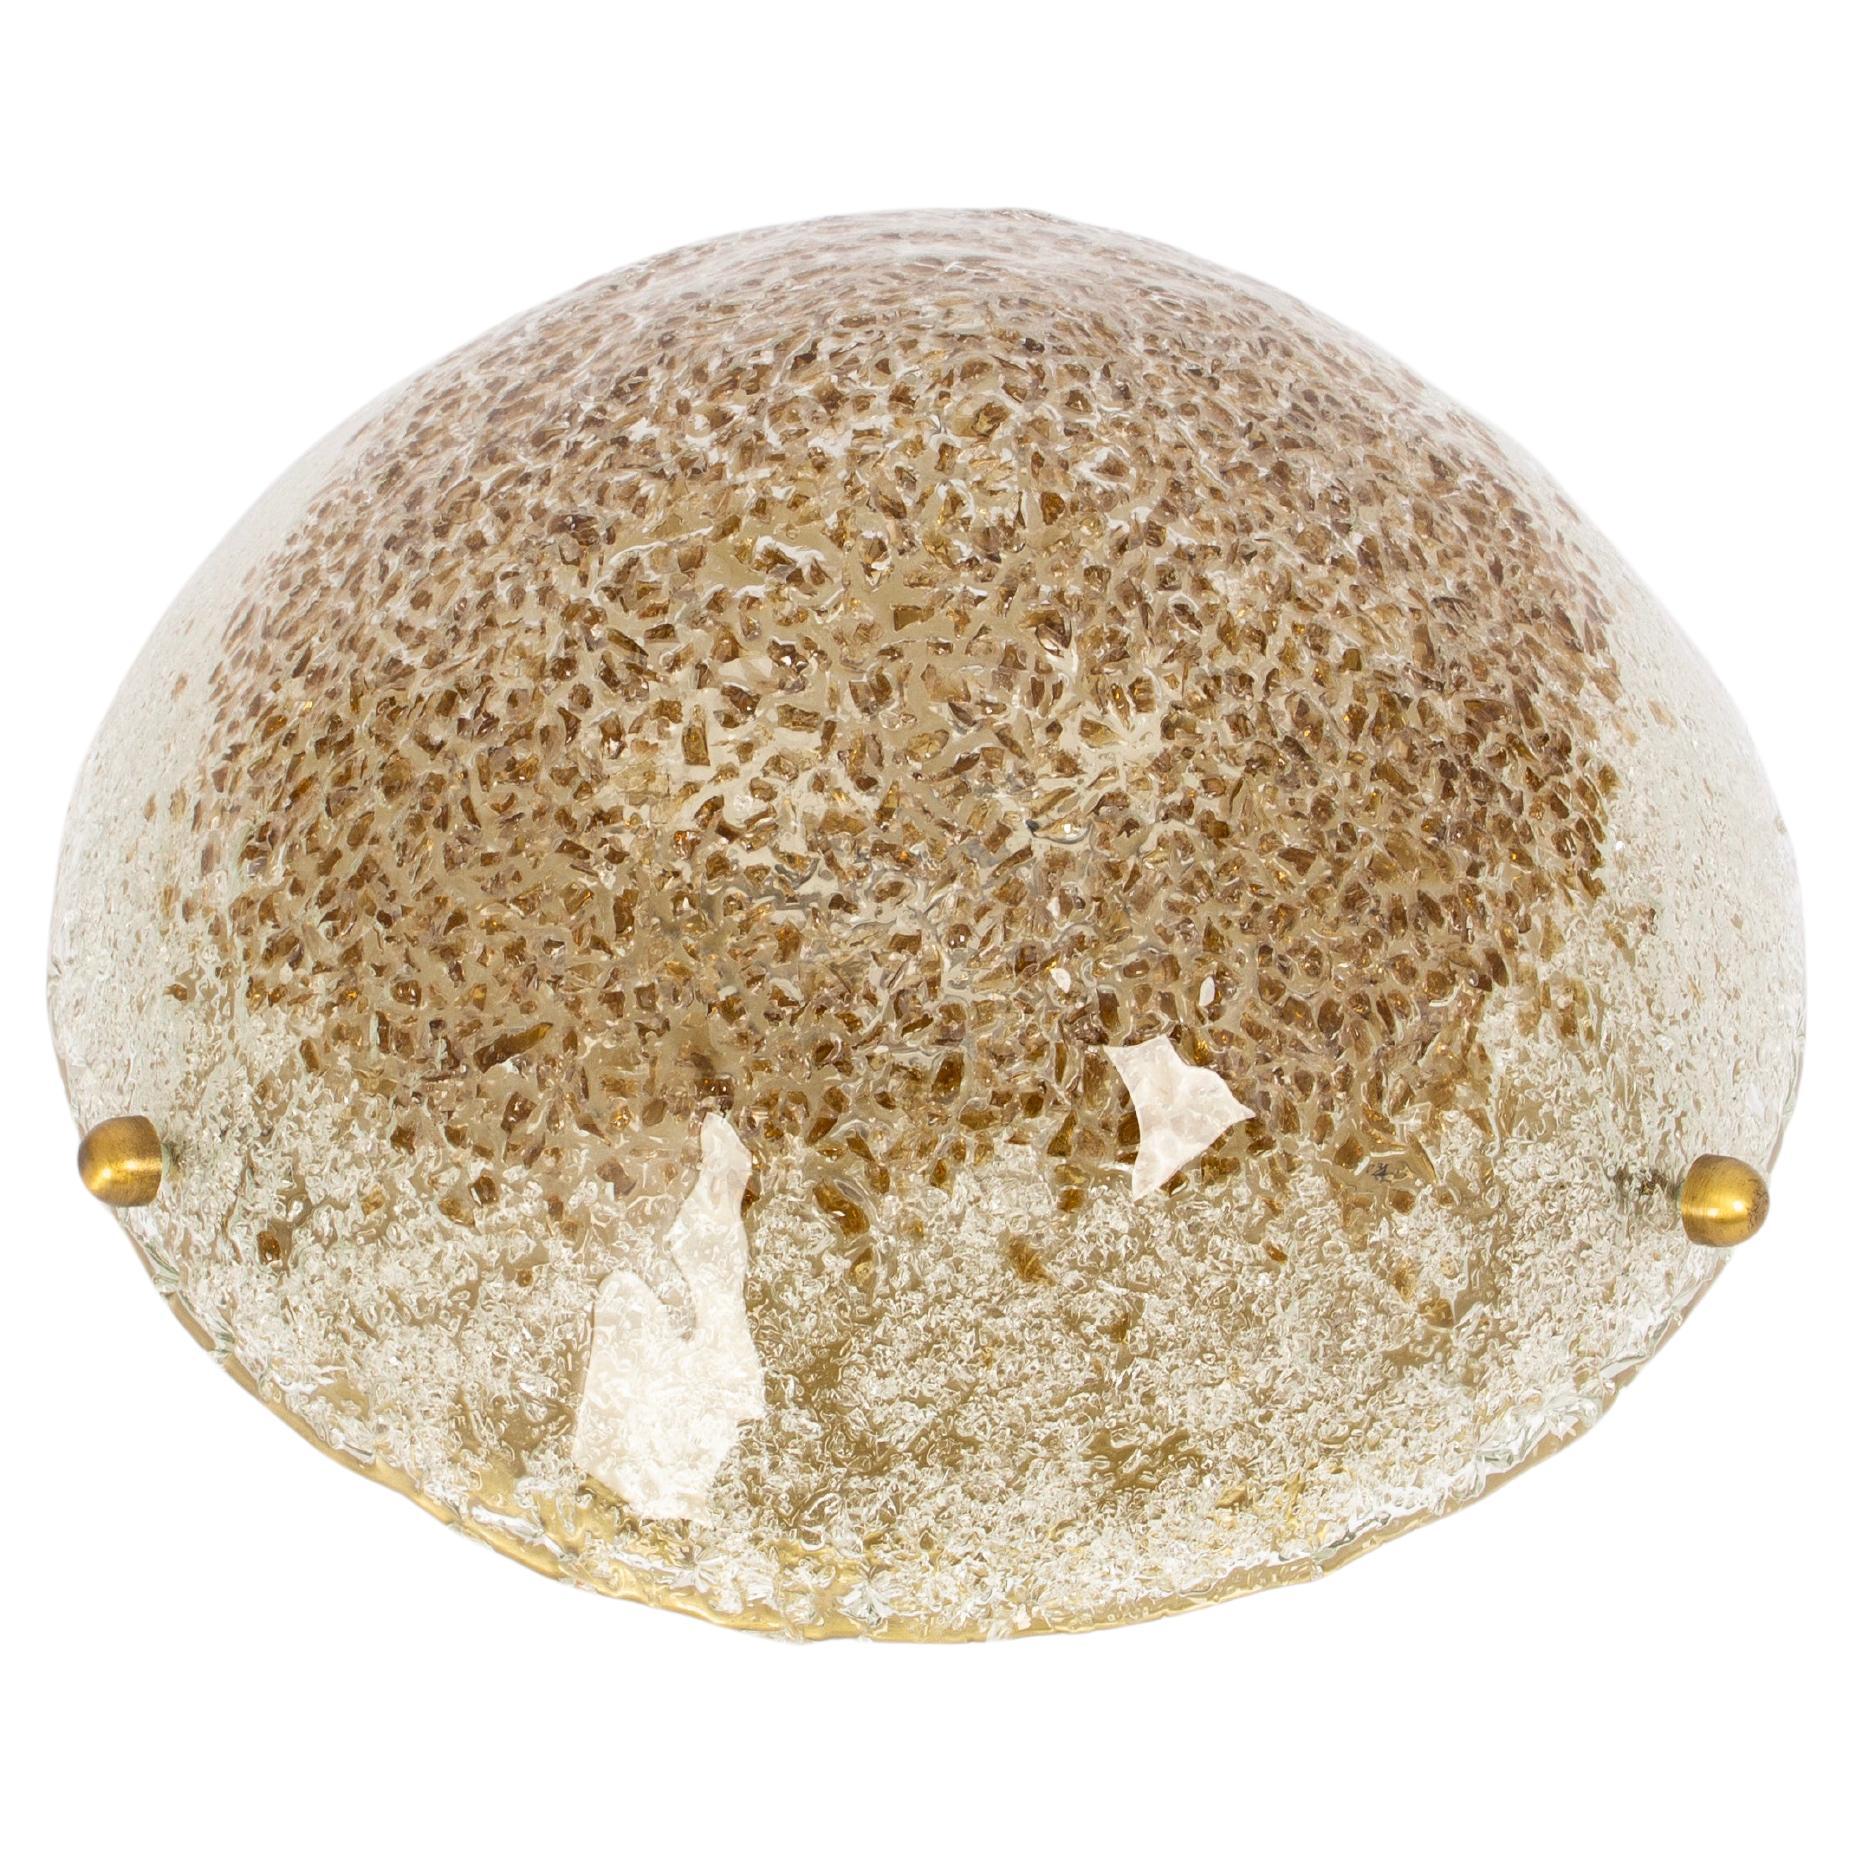 Eine wunderschöne runde Murano Unterputzdose von Hillebrand Leuchten, Deutschland, 1970er Jahre.
Dickes mundgeblasenes Glas, auf einem Messingfuß befestigt.

Hochwertig und in sehr gutem Zustand. Gereinigt, gut verkabelt und einsatzbereit. 

Die